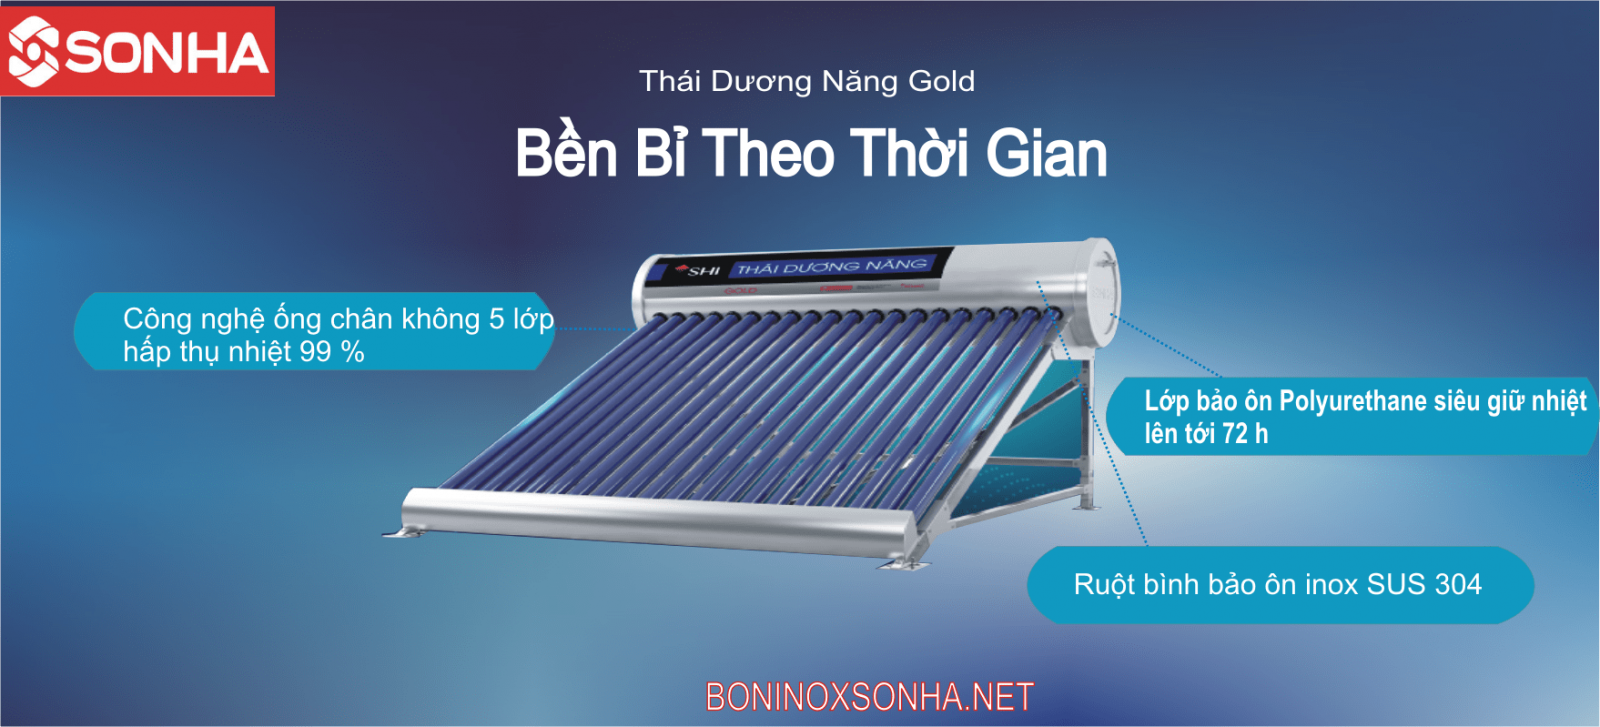 THÁI DƯƠNG NĂNG GOLD 58 - 180L Chân Không Sơn Hà